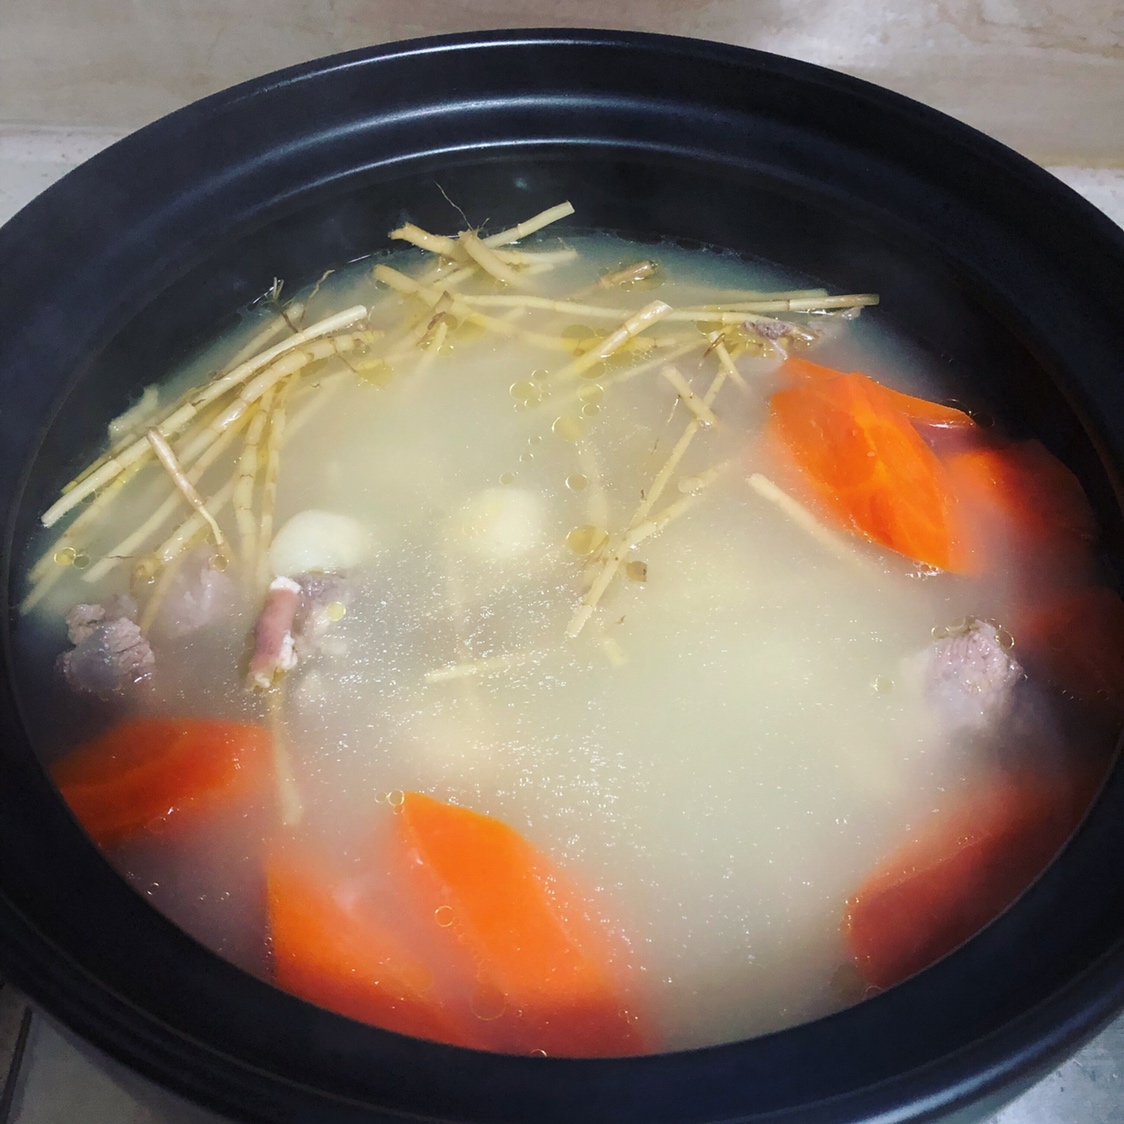 茅根竹蔗猪骨汤的做法